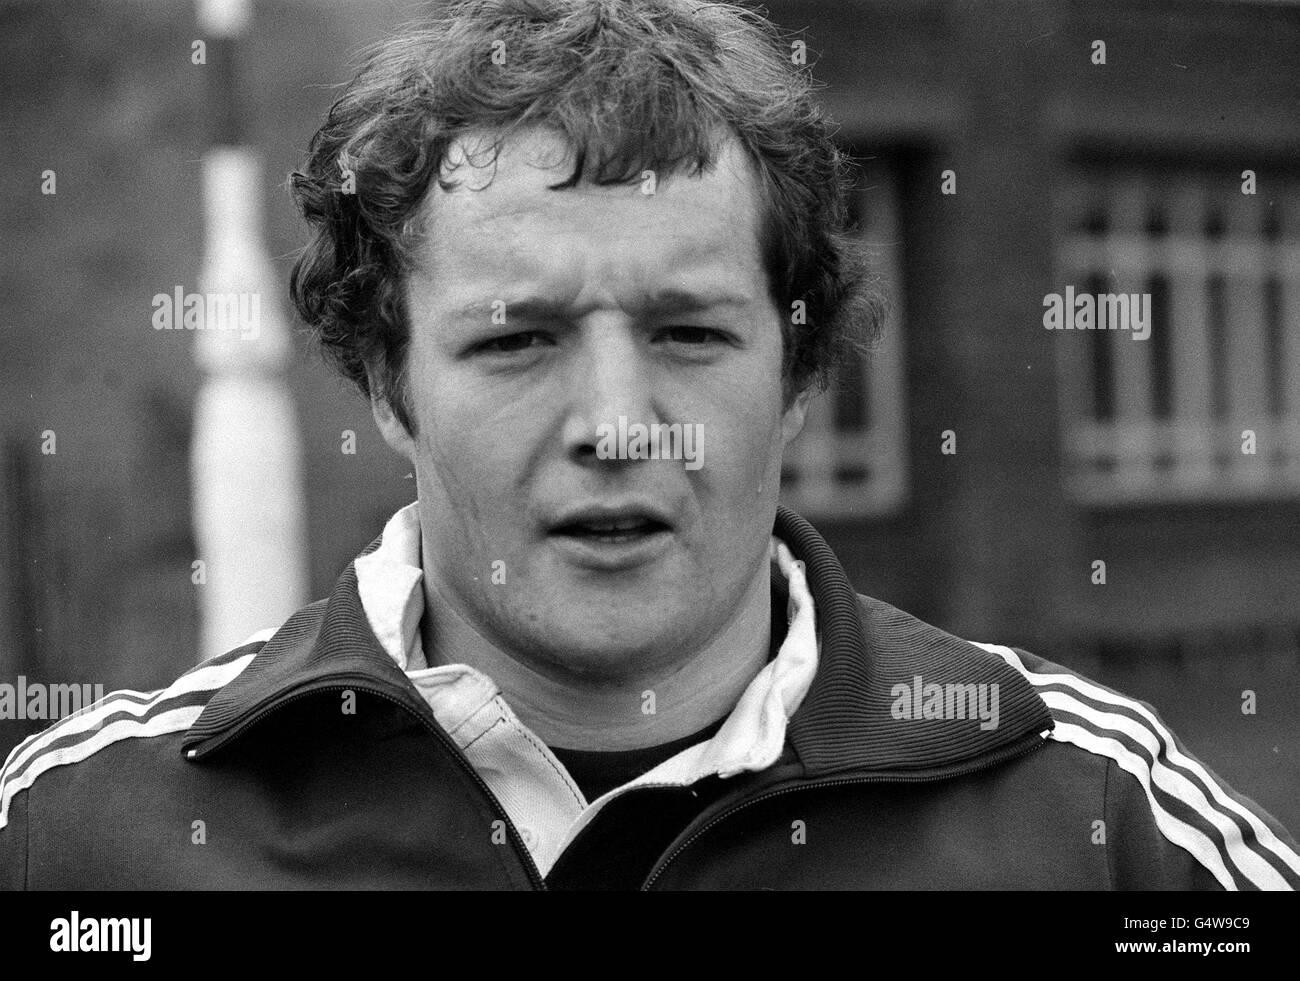 Colin Deans, Shutte der Scottish Rugby Union, spielt auf Vereinsebene für Hawick. Als Spezialist für Kraftstoffeinspritzung im Motorenhandel gewann er 1978 seinen ersten Cap gegen Frankreich. Stockfoto